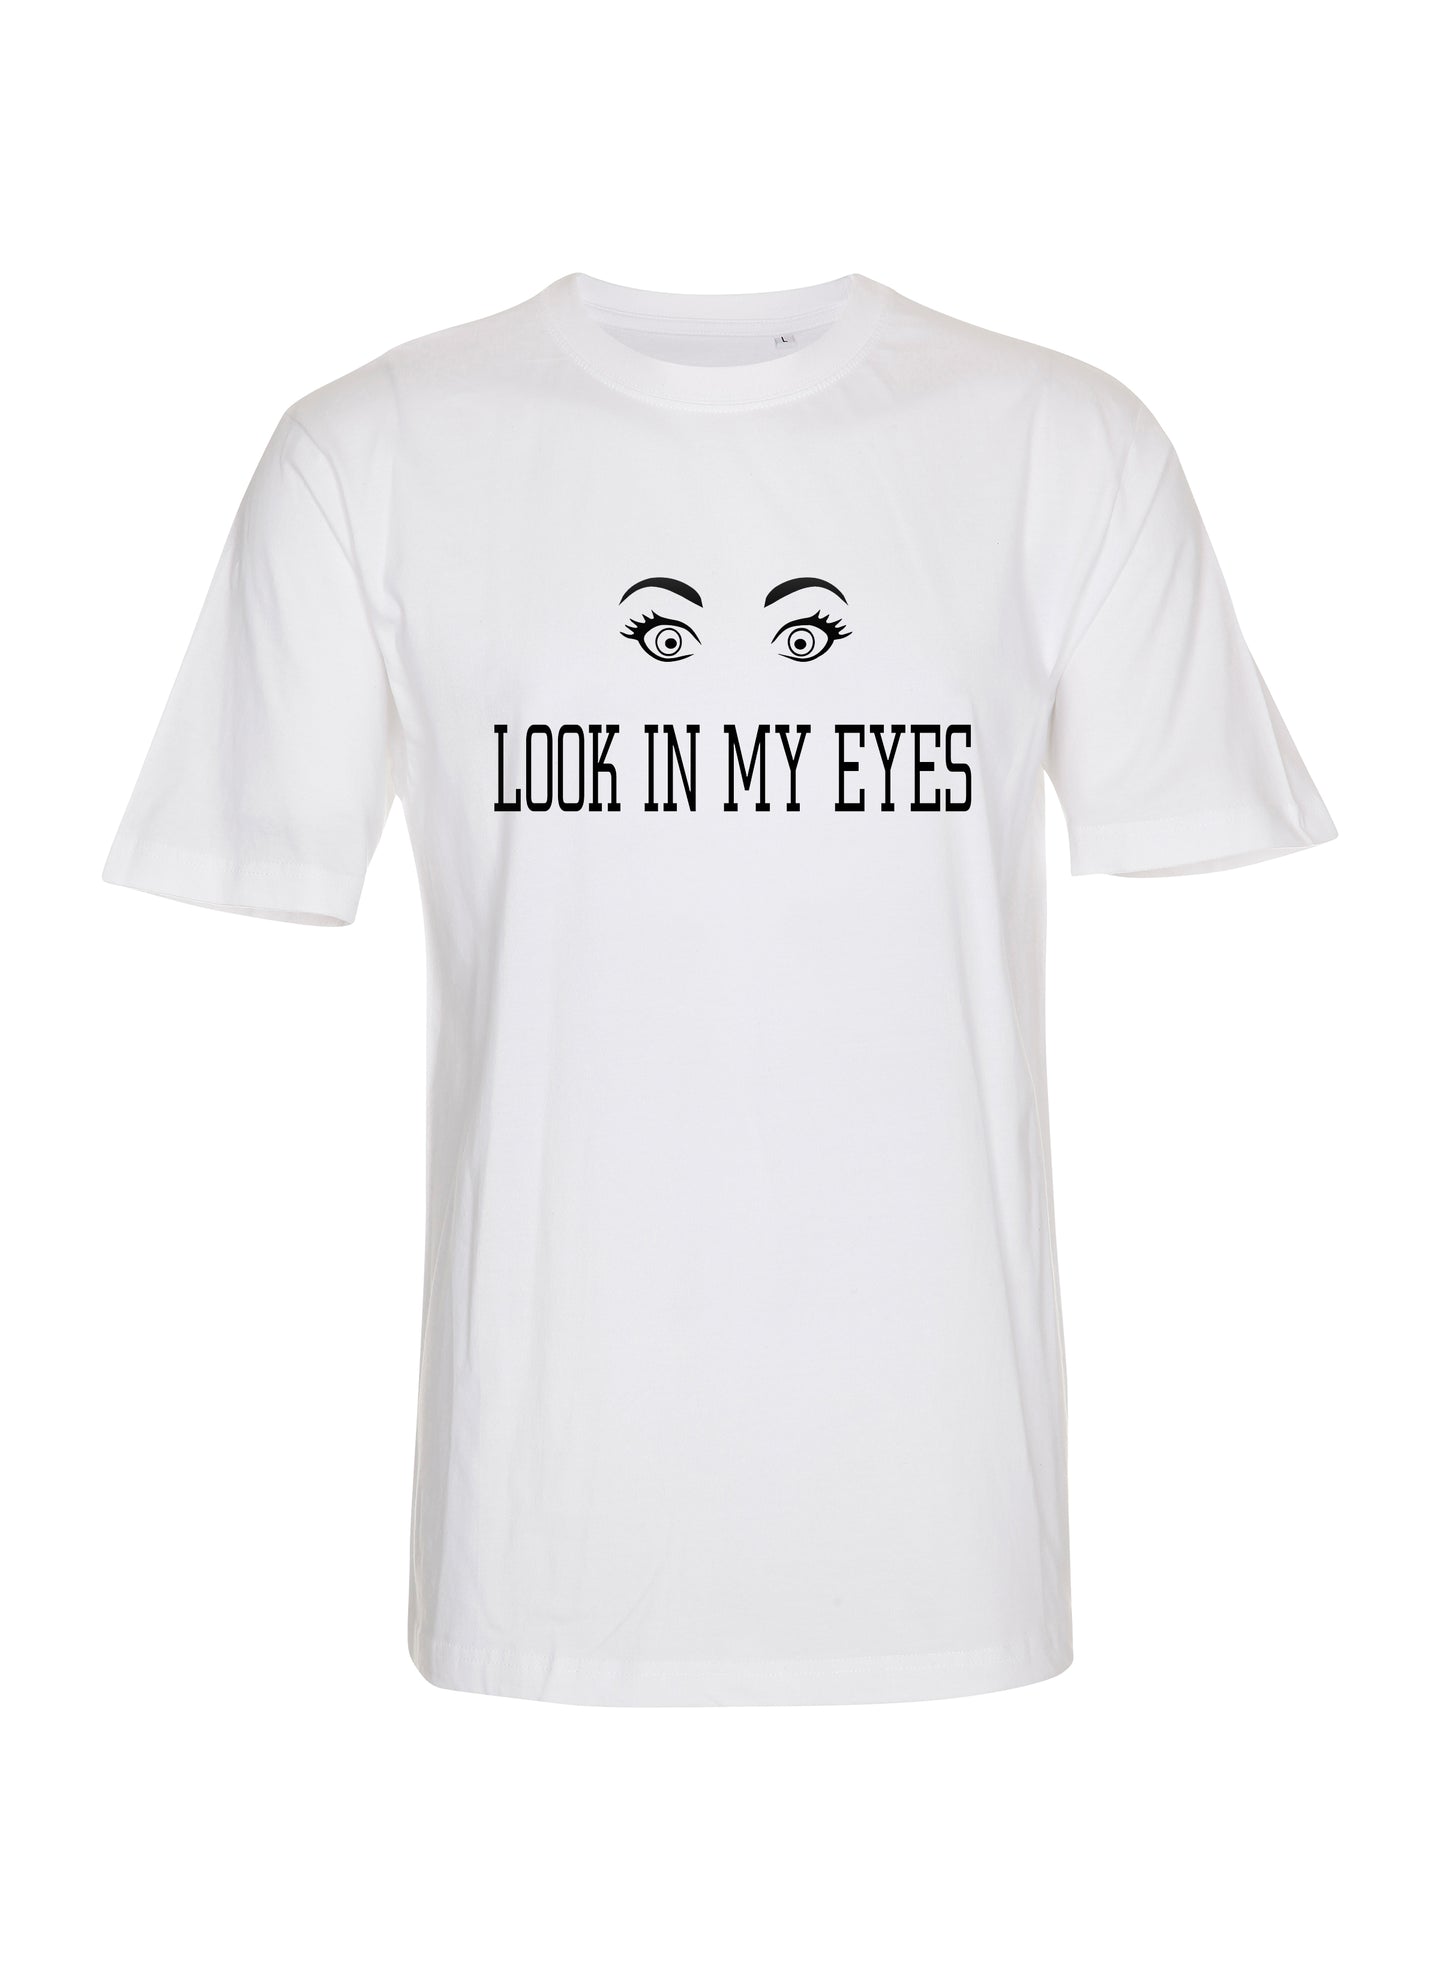 Look in my eyes